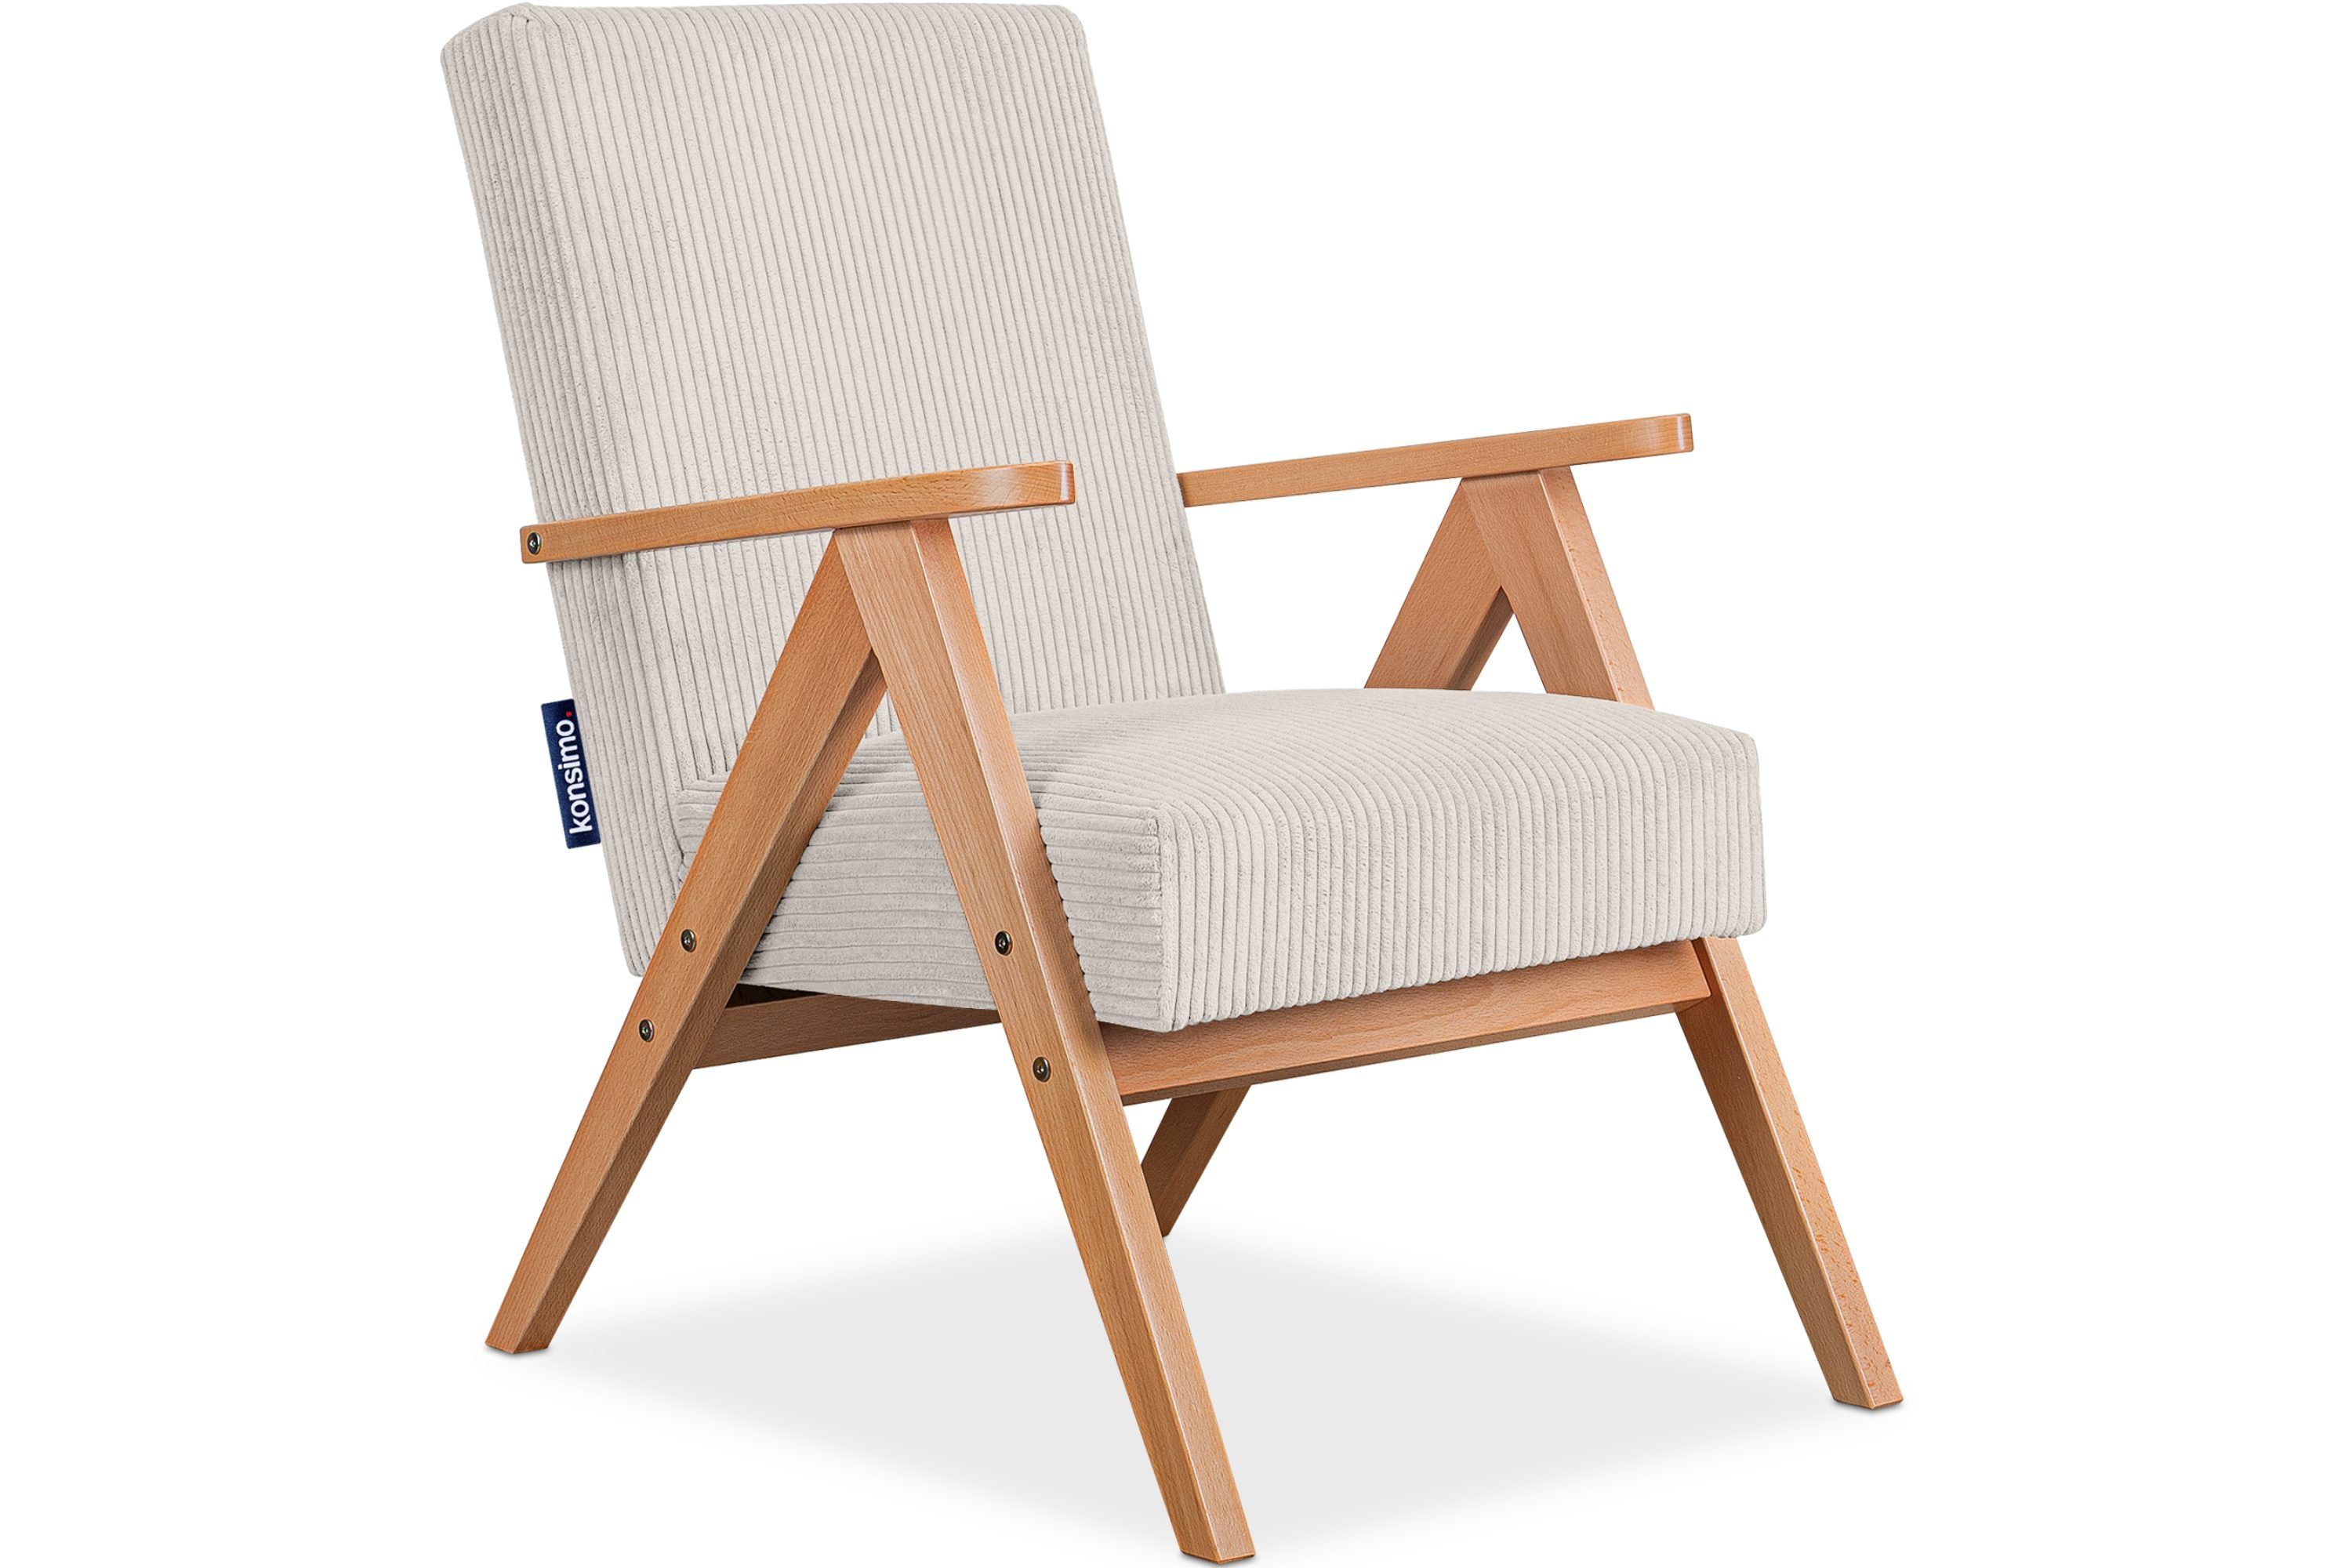 Konsimo Cocktailsessel NASET Sessel, Rahmen aus lackiertem Holz, profilierte Rückenlehne